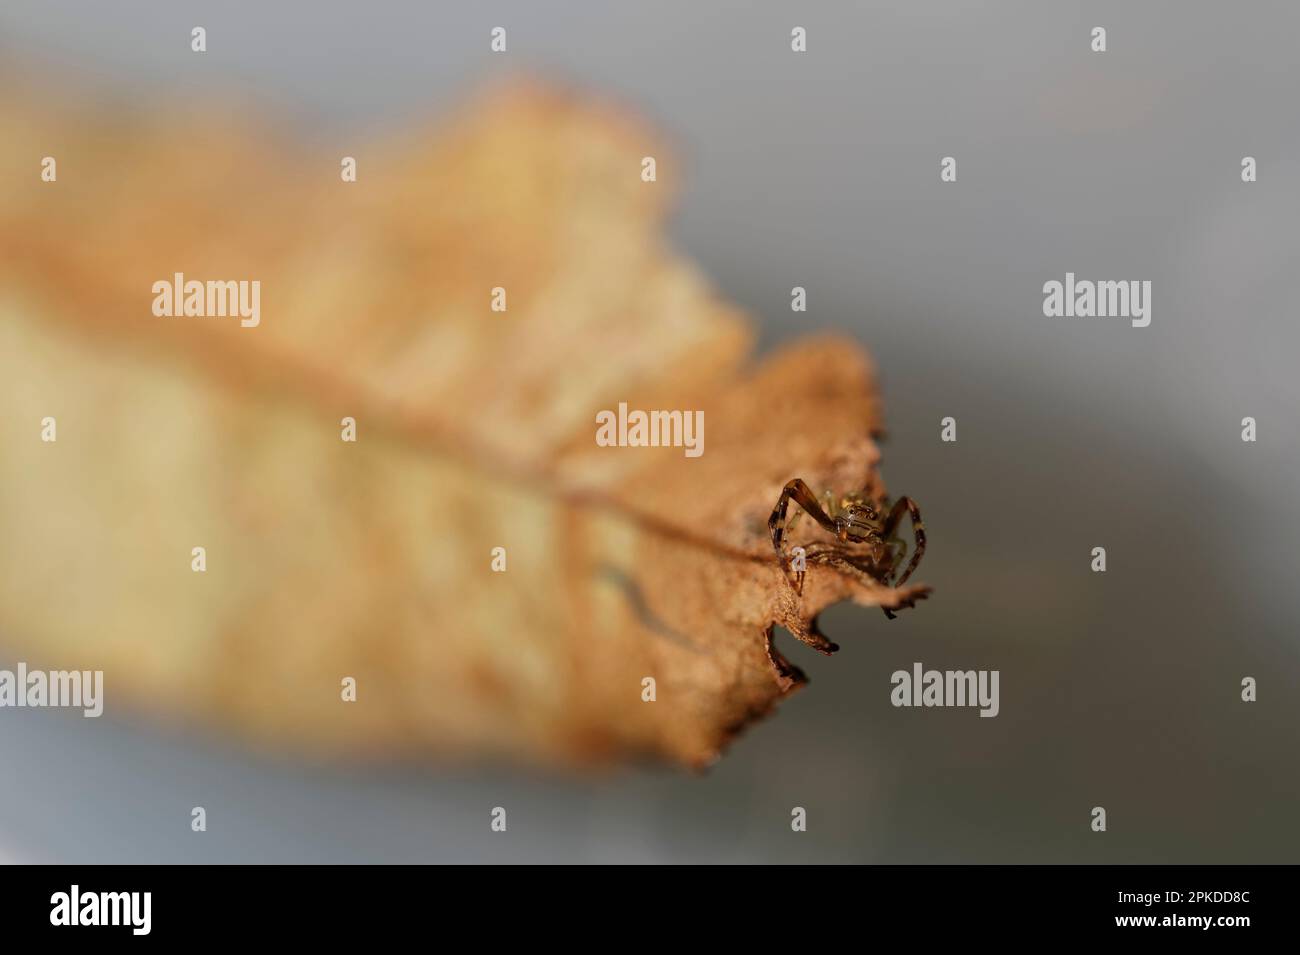 Une araignée de crabe regarde la caméra, elle a les yeux les plus beaux. Ce cliché de macro permet également de rétrograder la profondeur de champ. Banque D'Images